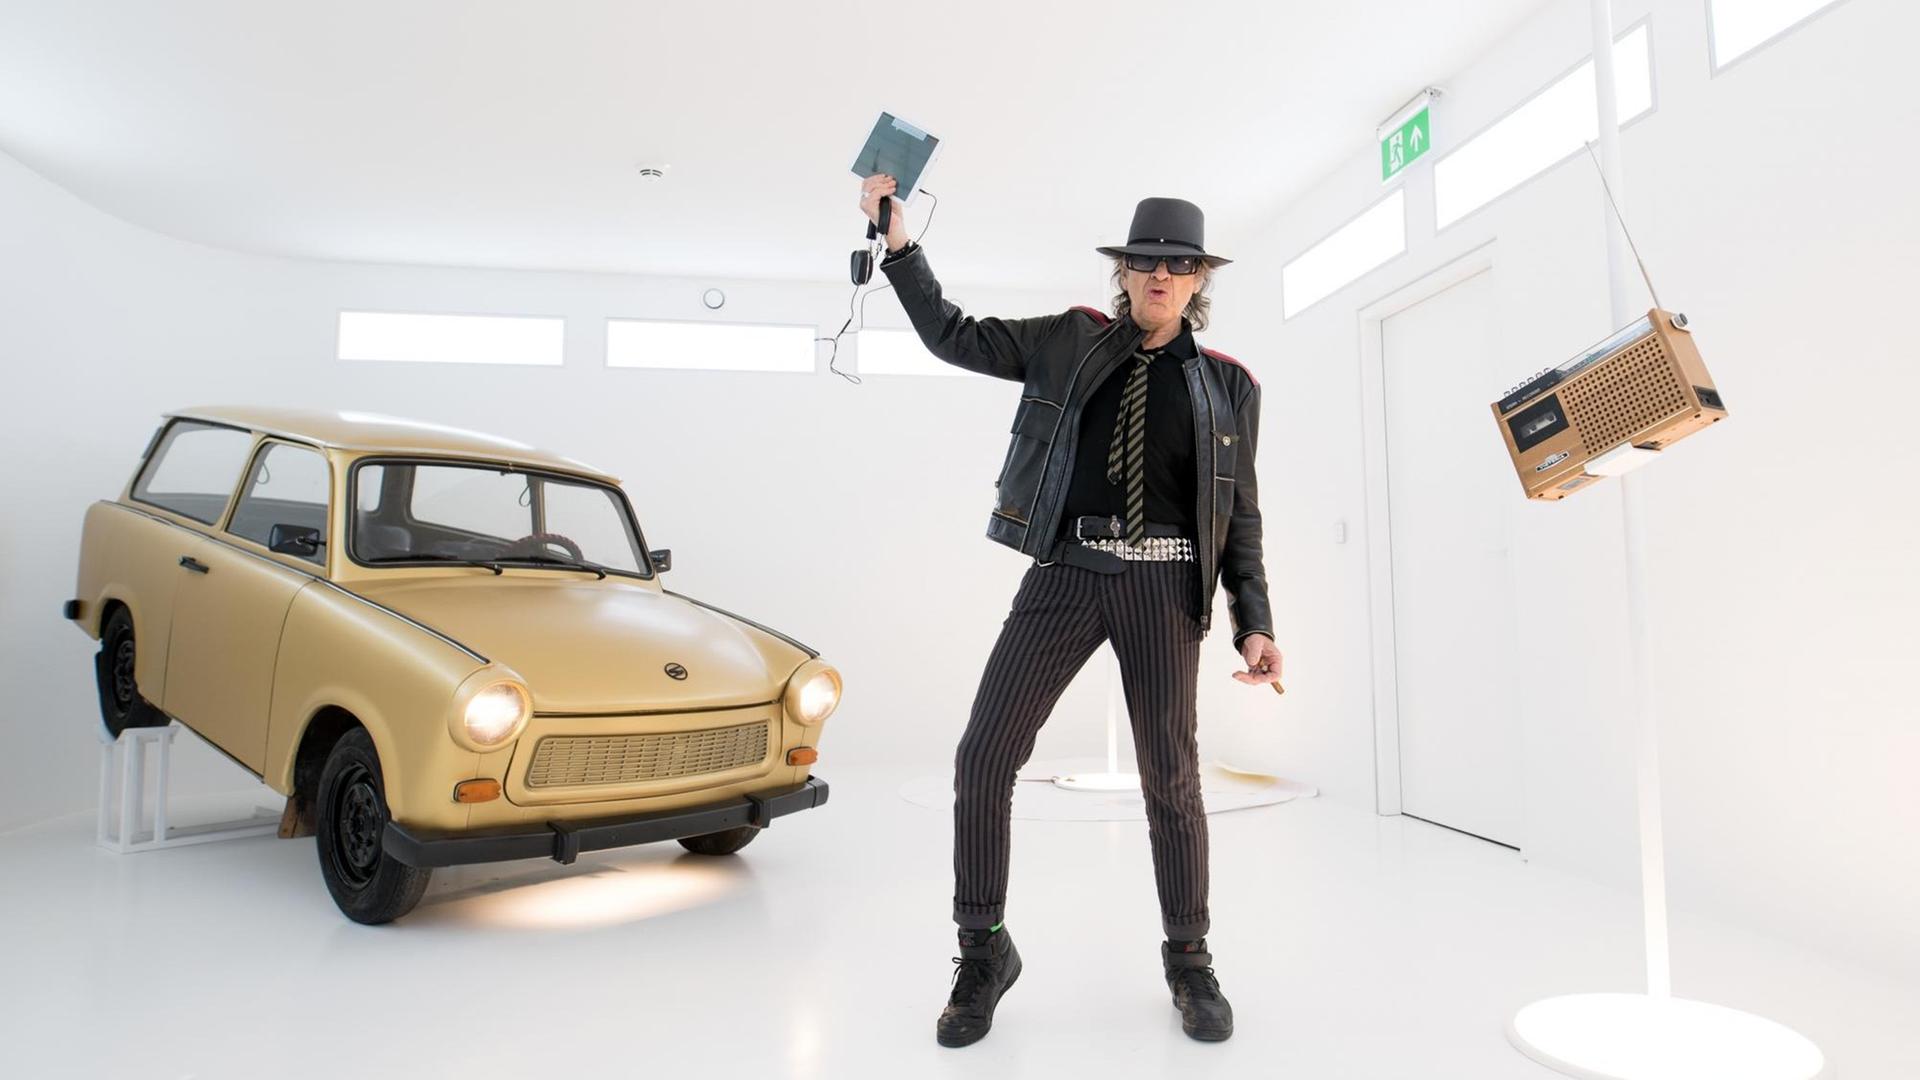 Rockstar Udo Lindenberg in der "Panik City", dem Multimedia-Abenteuer "Die Udo Lindenberg Experience" im Klubhaus St. Pauli, 13.03.2018